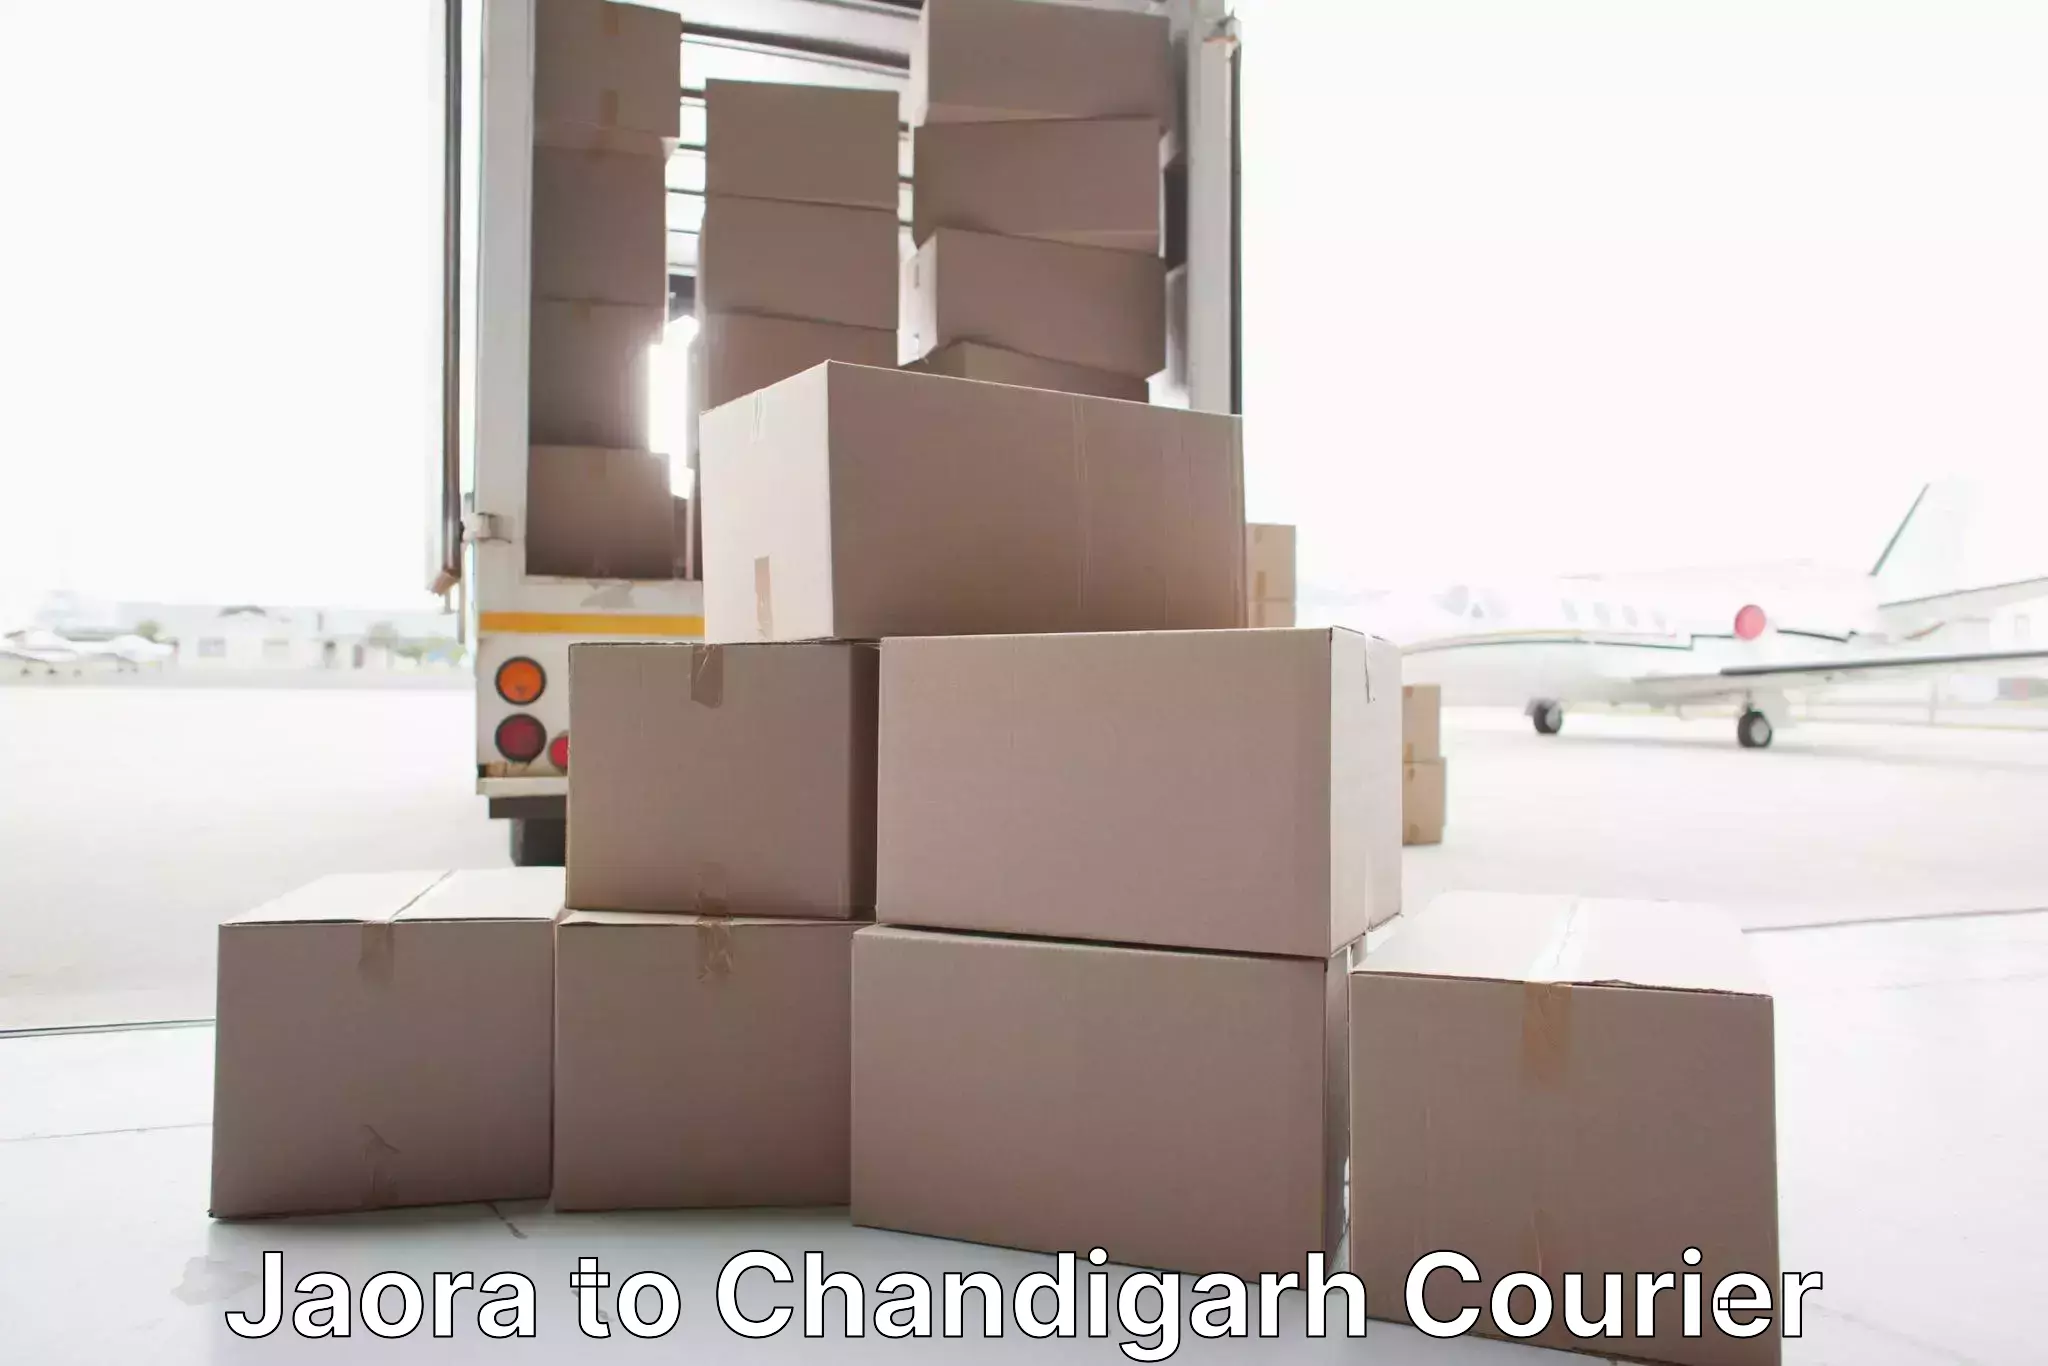 Seamless moving process Jaora to Chandigarh